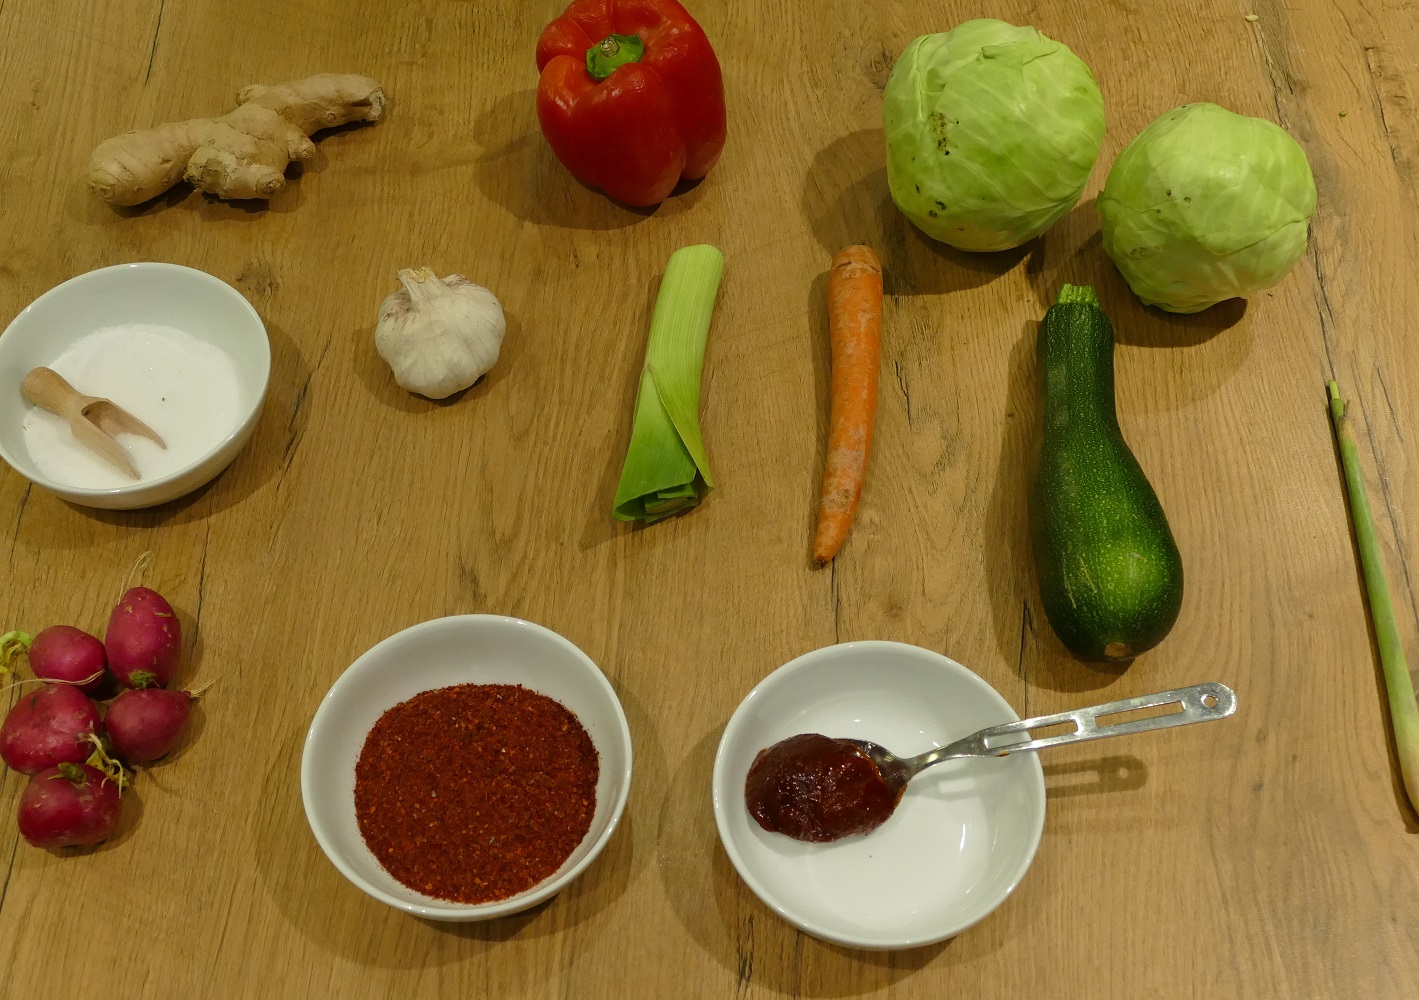 Zutaten wie Porree, Zucchini, Paprika, Möhre oder Knoblauch liegen auf einem Holztisch.